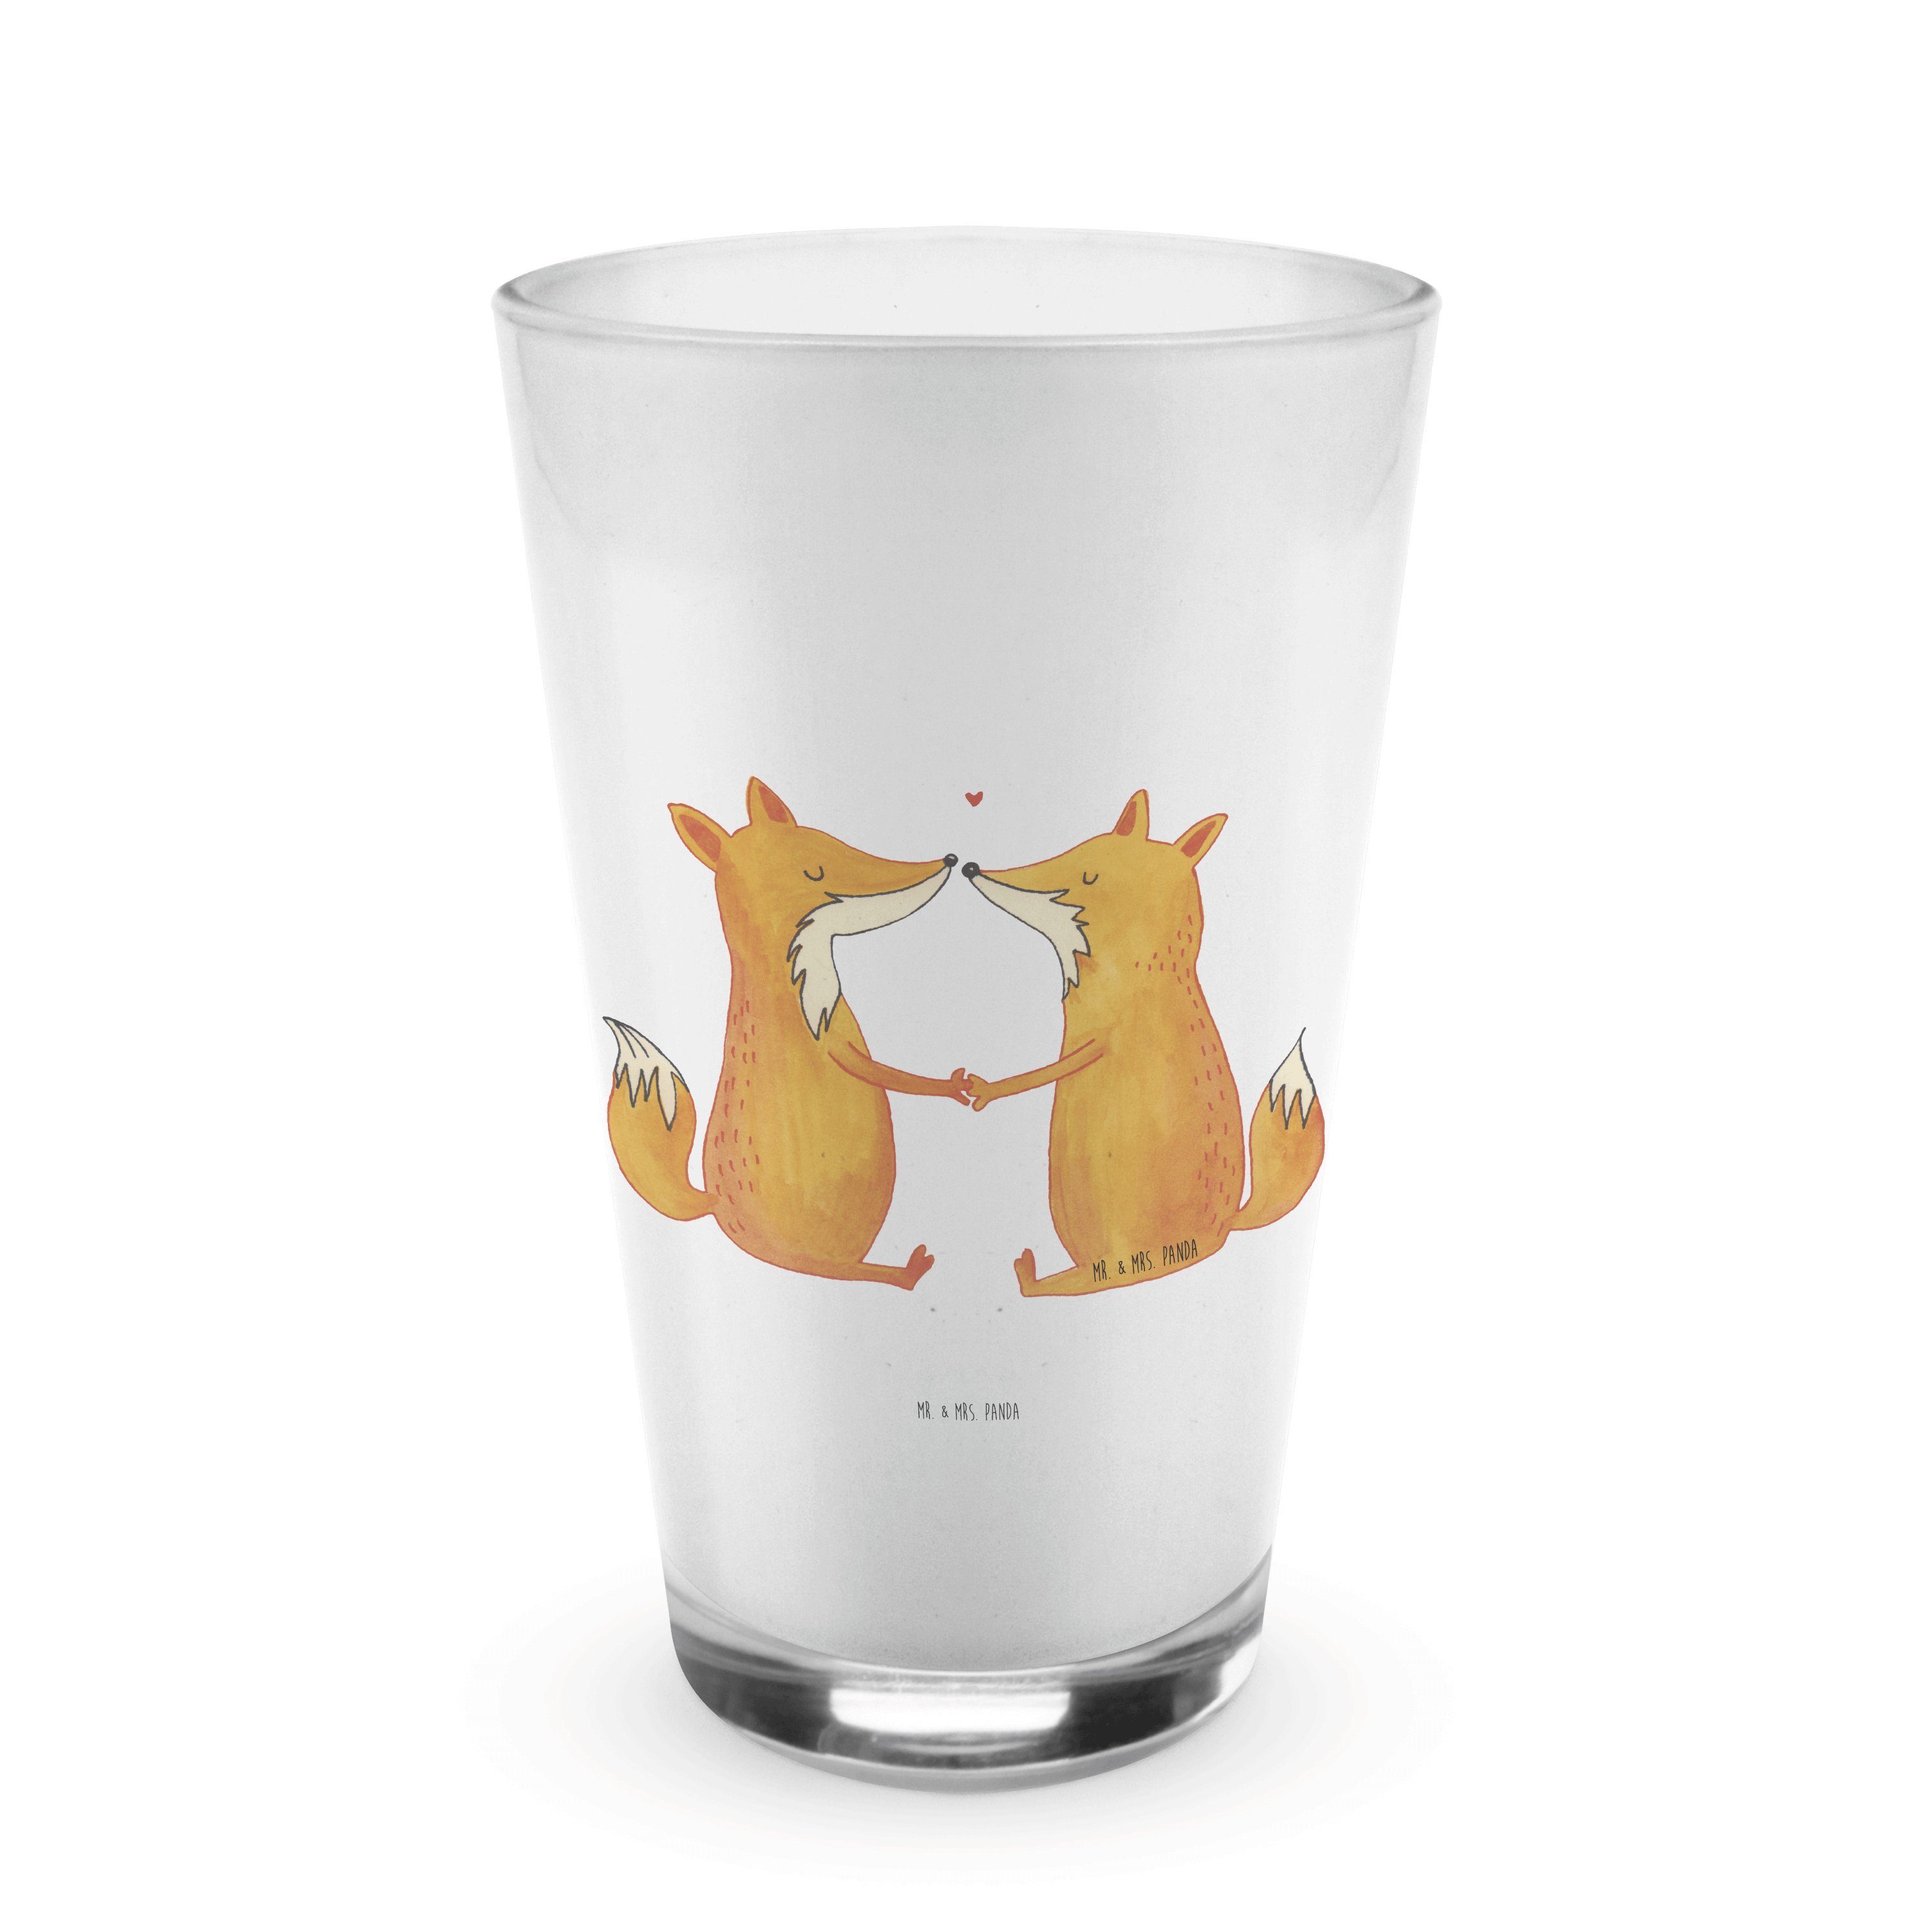 Mr. & Mrs. Panda Glas Füchse Liebe - Transparent - Geschenk, Latte Macchiato, Cappuccino Gl, Premium Glas